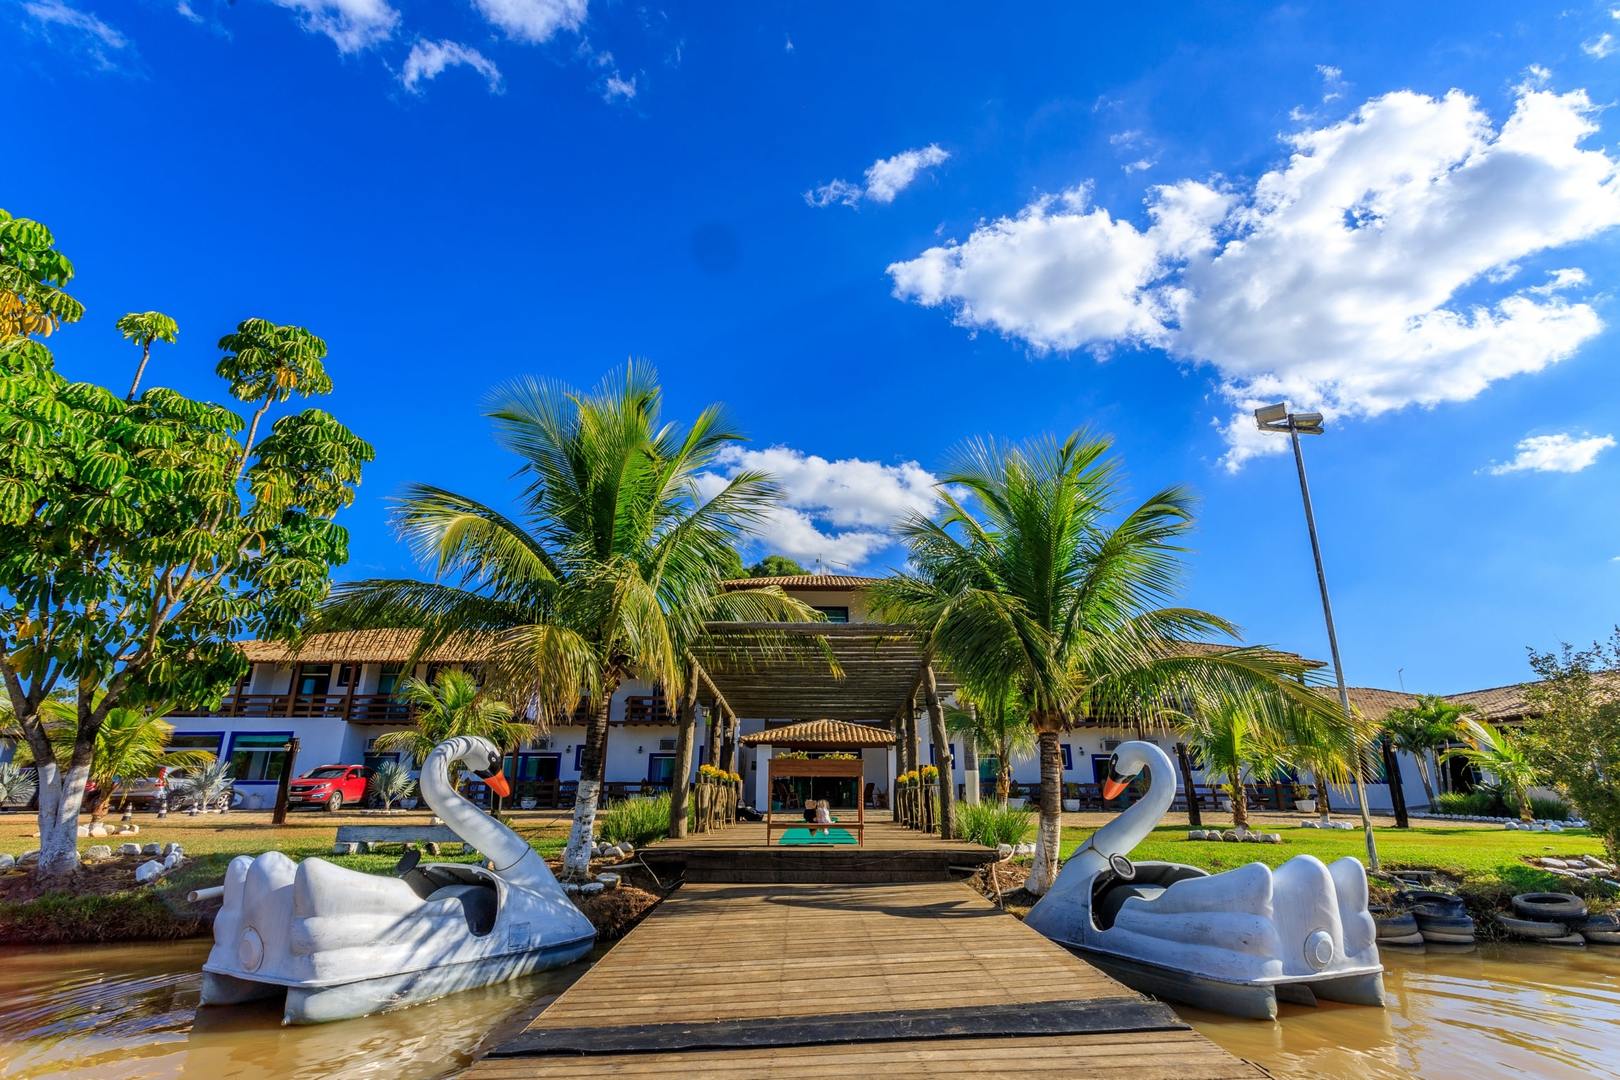 Hotel Fazenda Lagoa Azul em Esmeraldas – MG - Blog Pelas Estradas de Minas